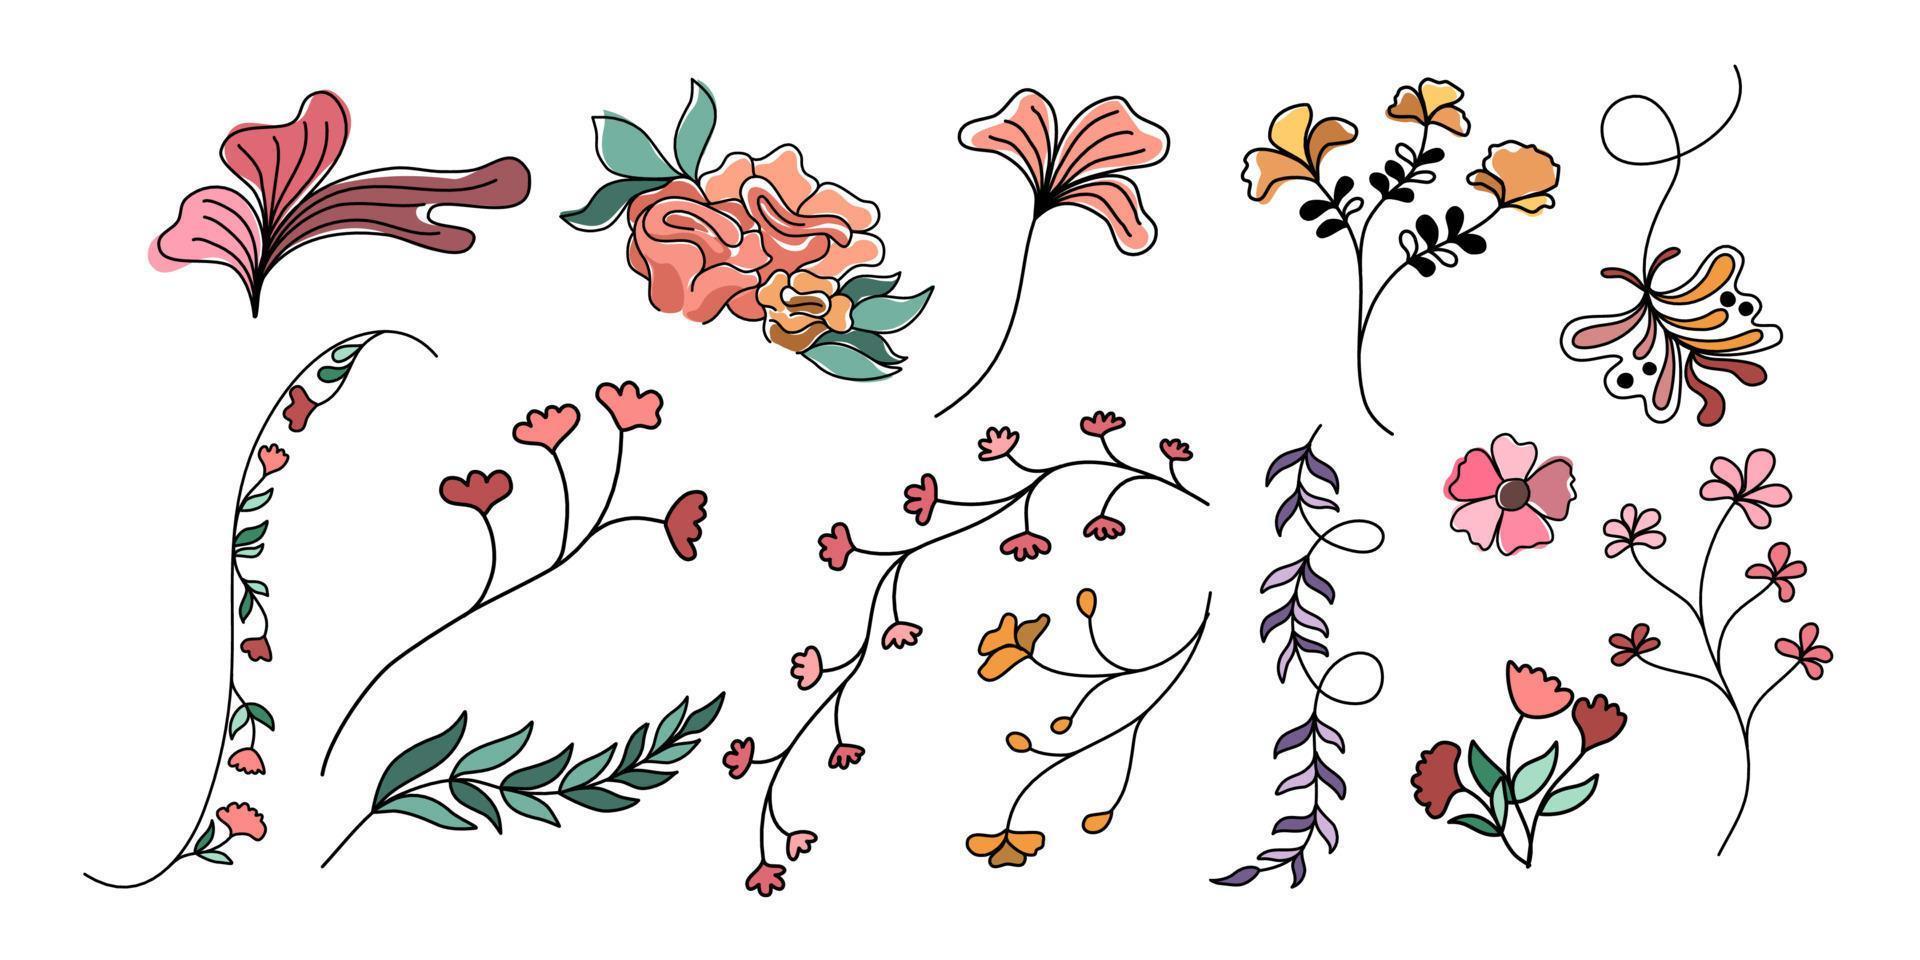 Vektor-Set Blumen- und Blattelemente im Doodle-Stil für Dekorationen, Karten, Digitaldrucke, Papiermuster, Bekleidungsmuster, Aufkleber, Kissen, Frühlingsdekorationen usw. vektor